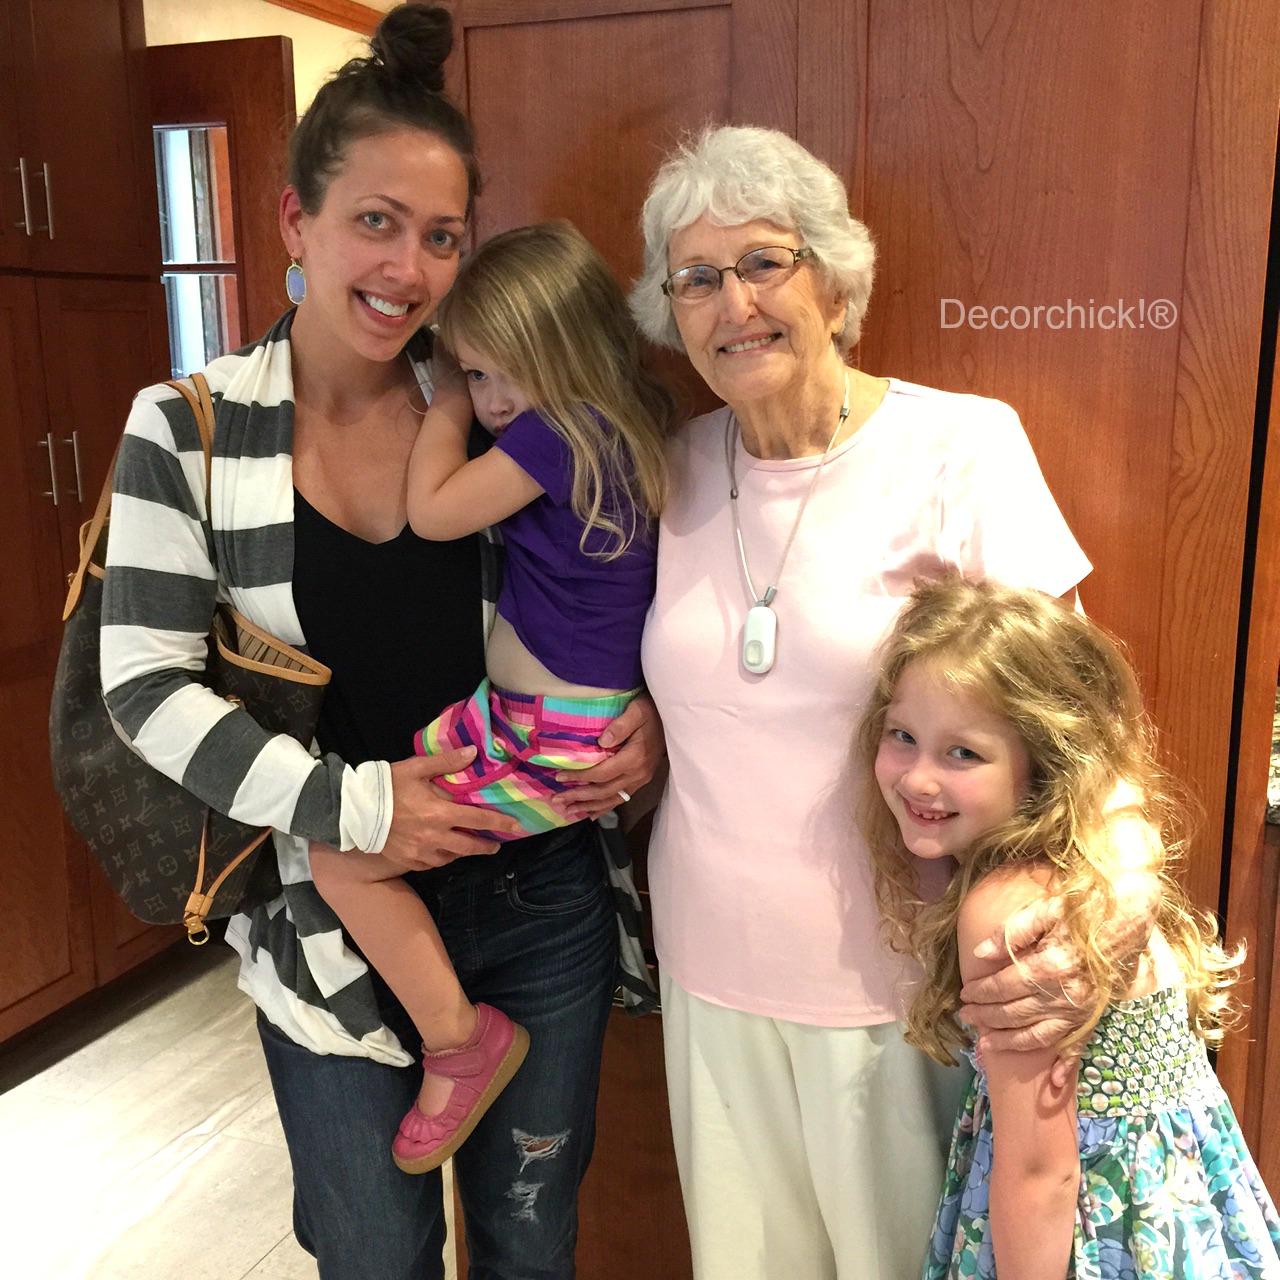 Grandma and Grandkids | Decorchick!®